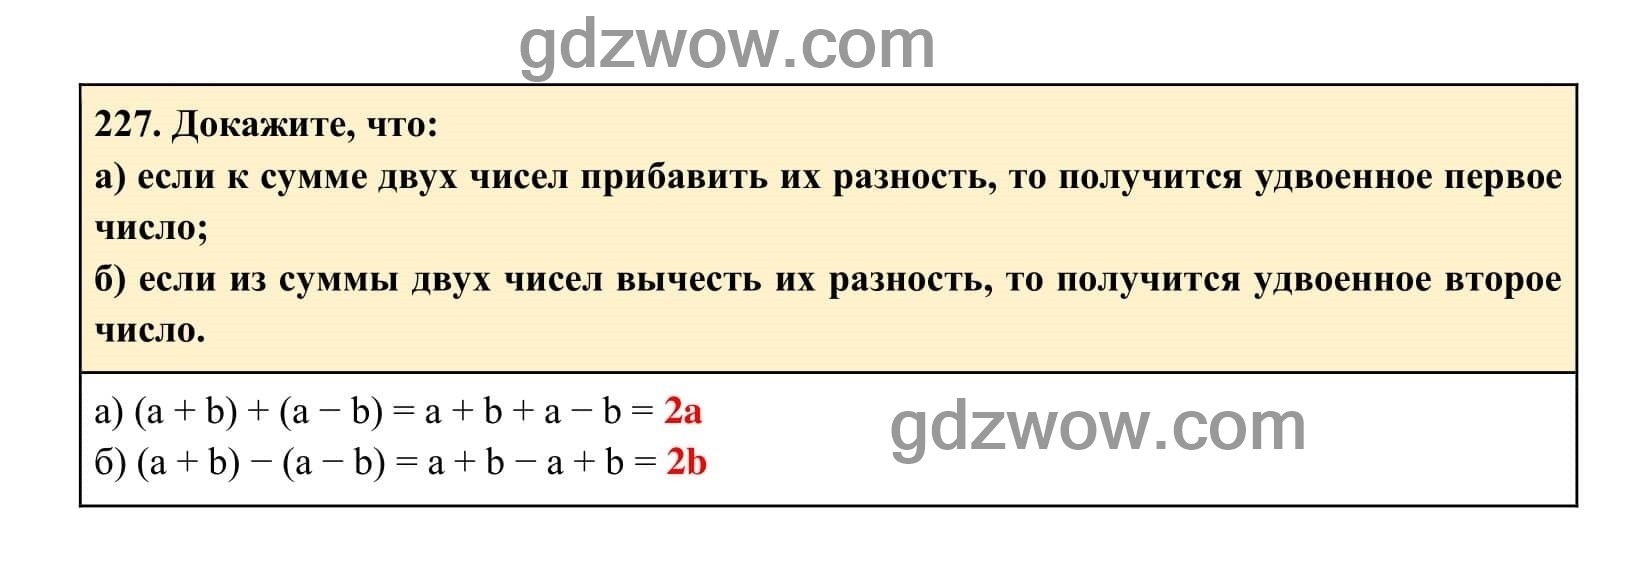 Упражнение 227 - ГДЗ по Алгебре 7 класс Учебник Макарычев (решебник) - GDZwow